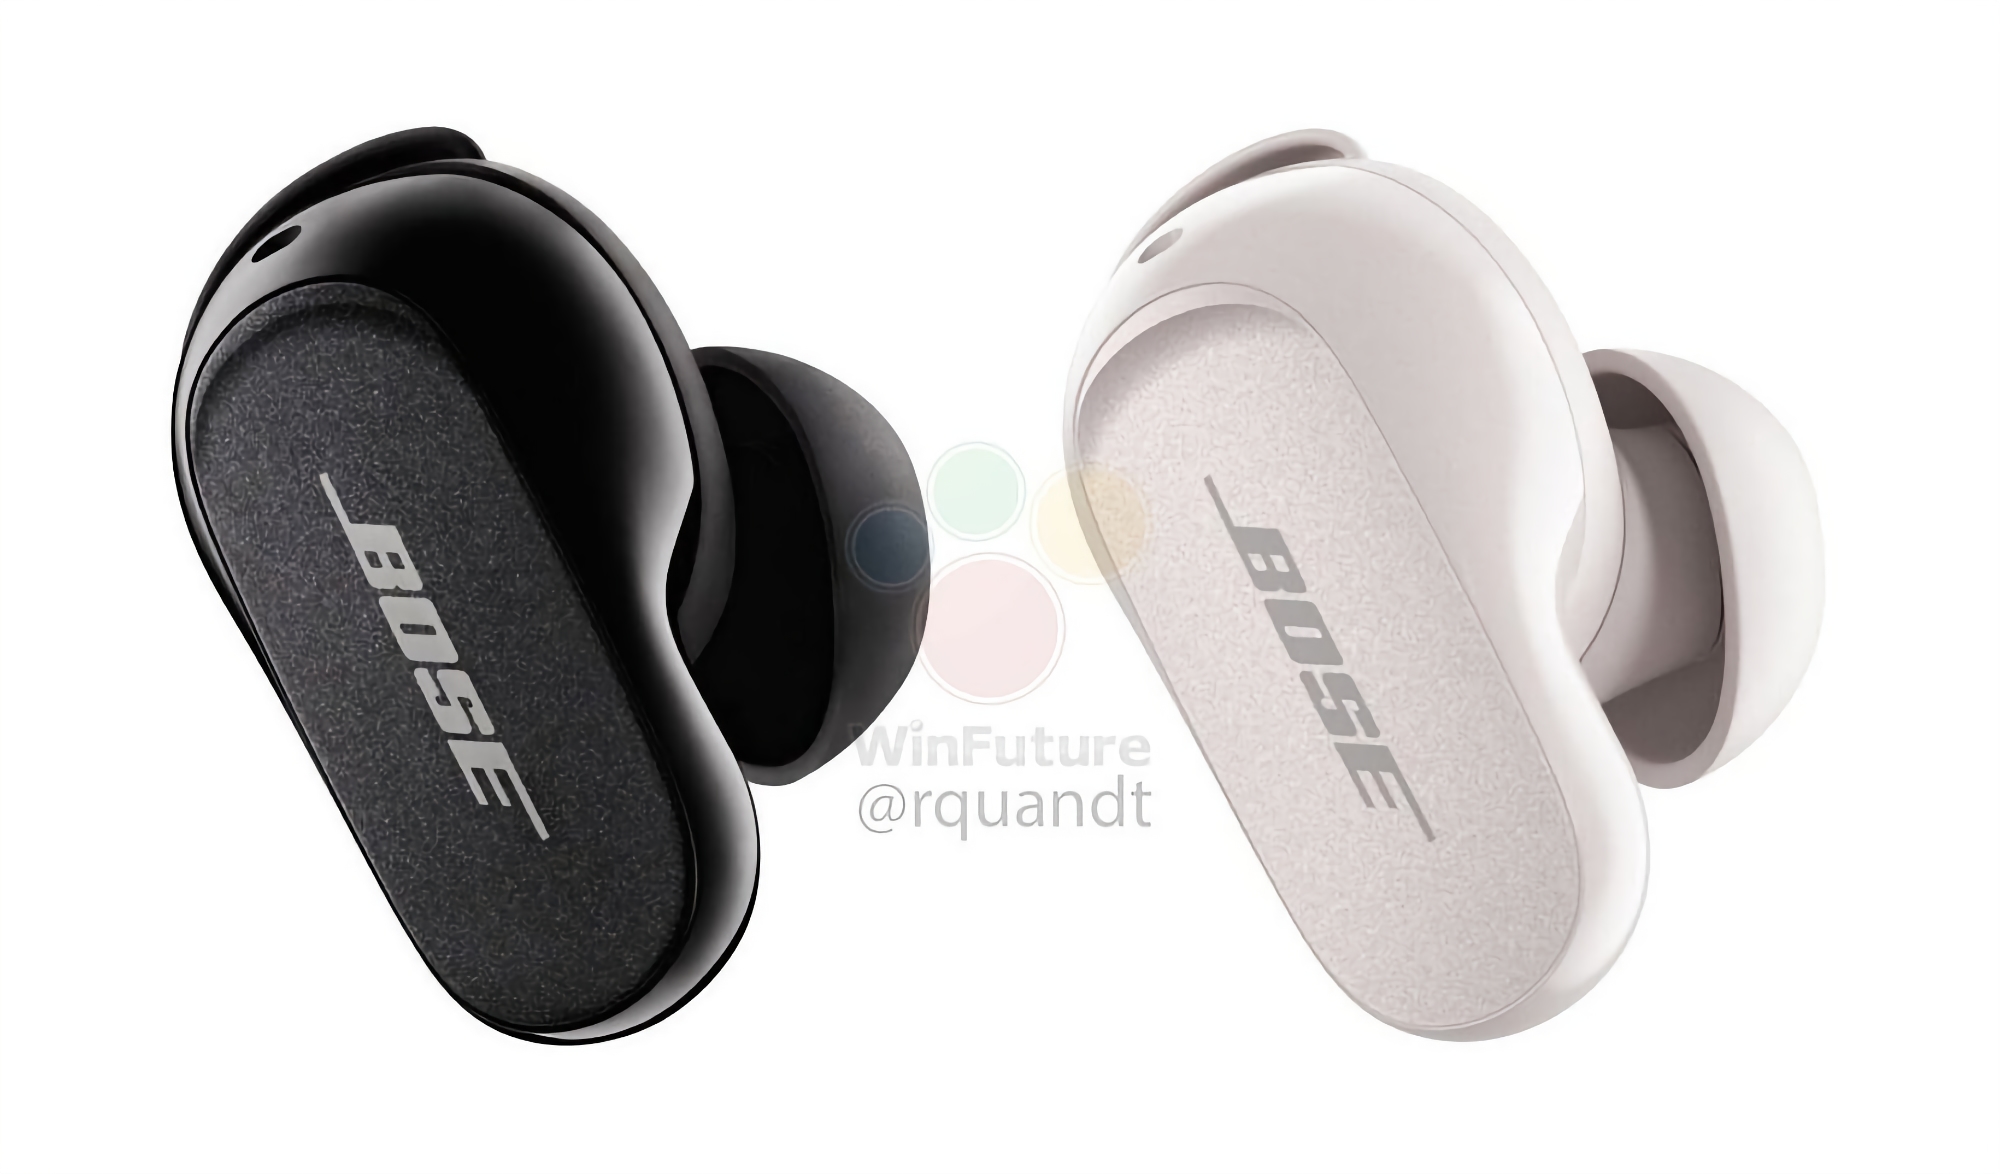 Bose przedstawia słuchawki QuietComfort Earbuds II TWS z nowym designem, ANC i ceną 299 USD